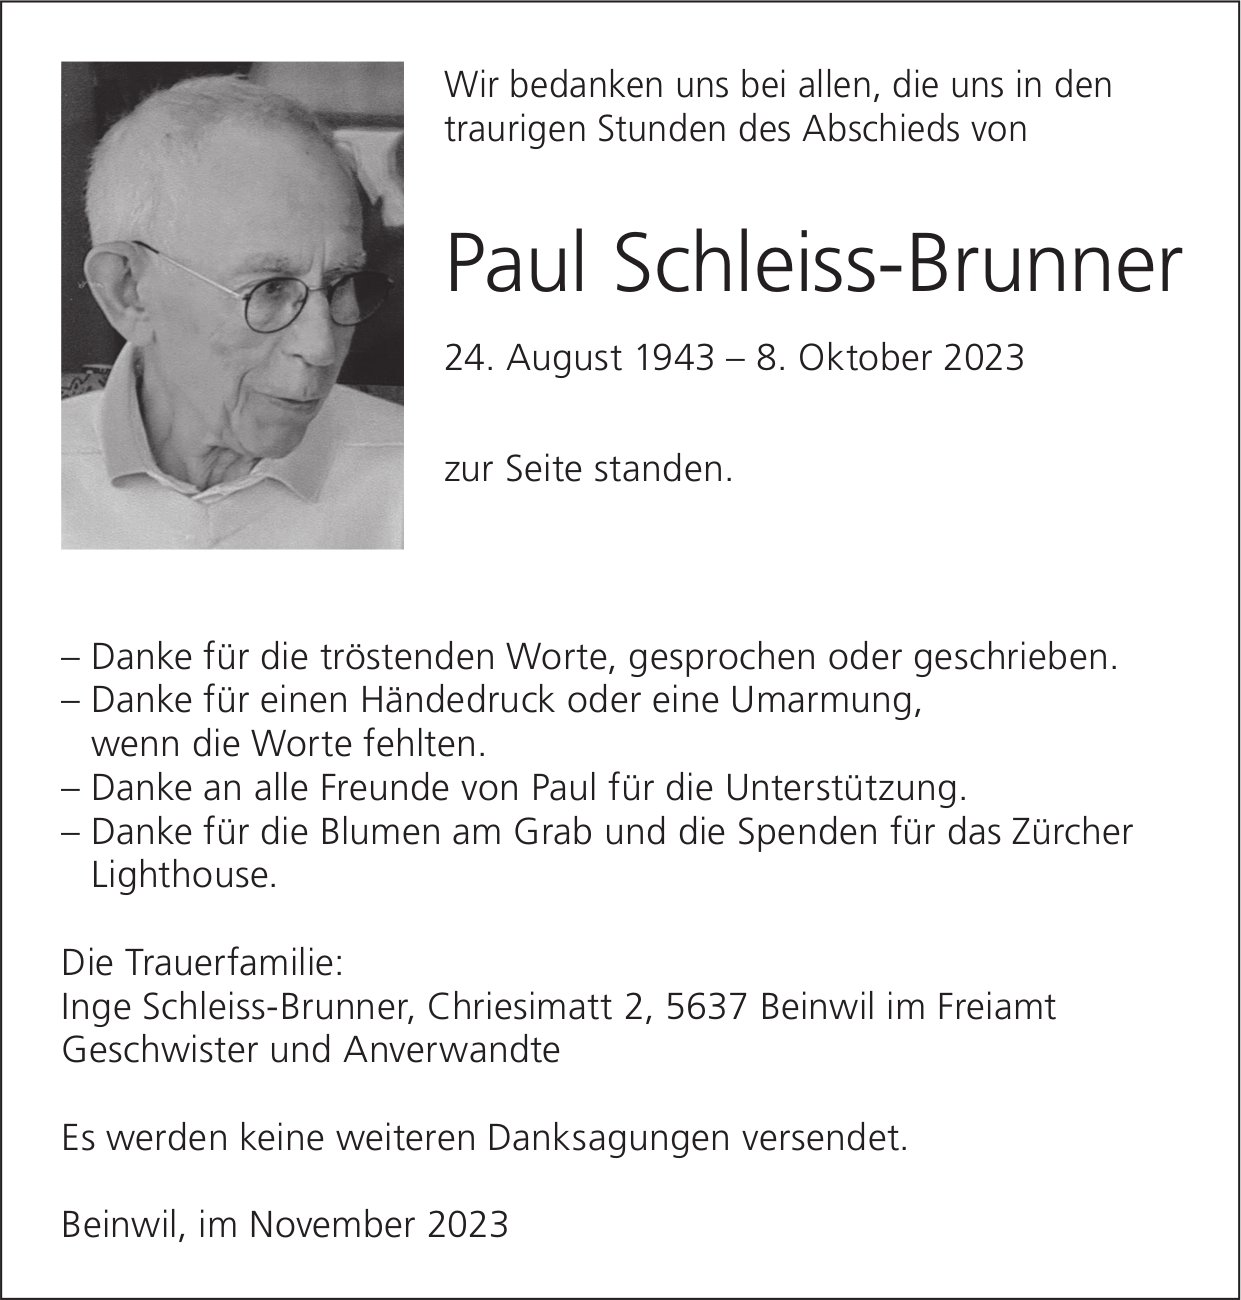 Schleiss-Brunner Paul, im November 2023 / DS